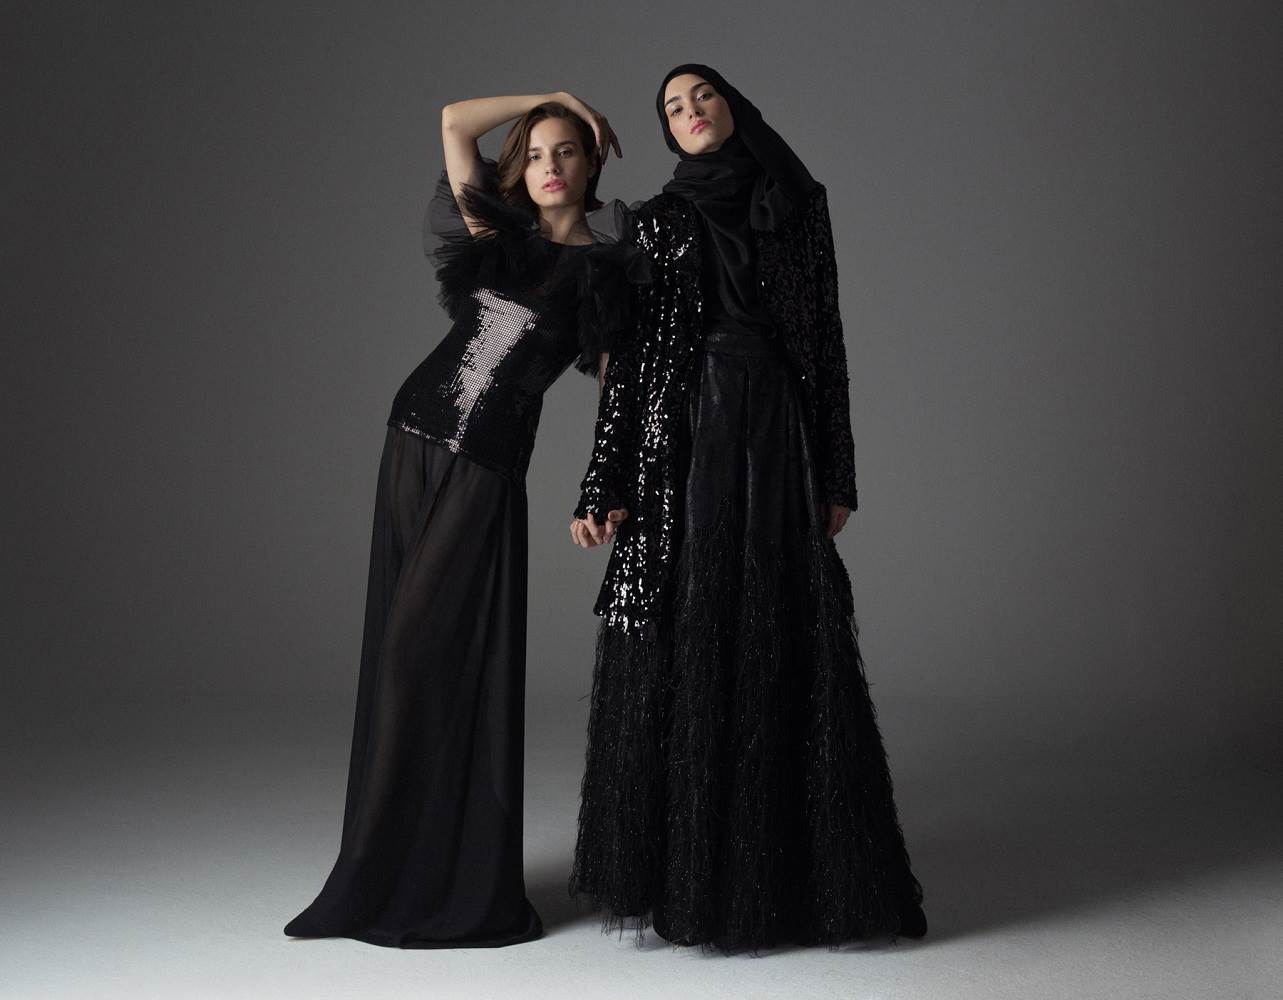 JEDINSTVENE U RAZLIČITOSTI Kaftan studio predstavio kolekciju #Sisters